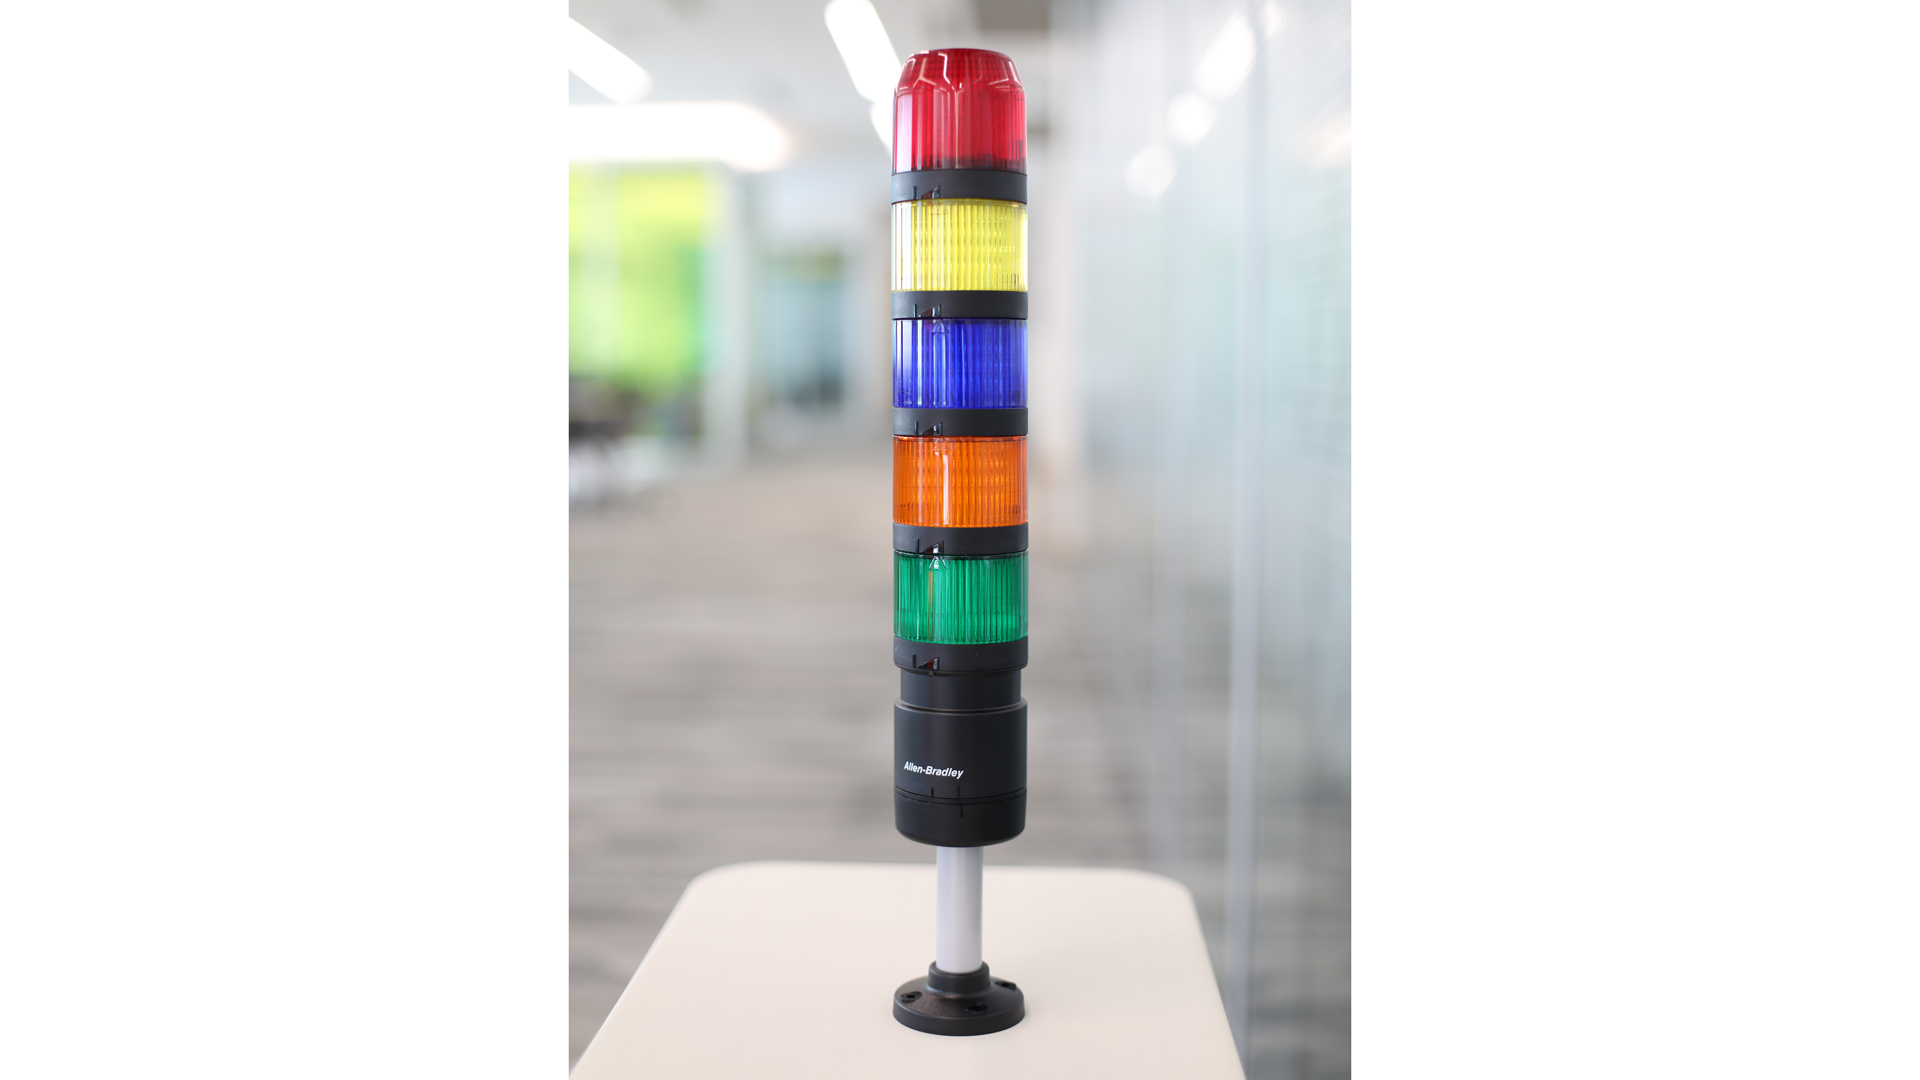 Eingang/Ausgangs-Verbindungs-Warnleuchte in der Tabelle – von oben nach unten – rote, gelbe, blaue, bernsteinfarbene und grüne unbeleuchtete Lichtmodule, schwarze Polhalterung 